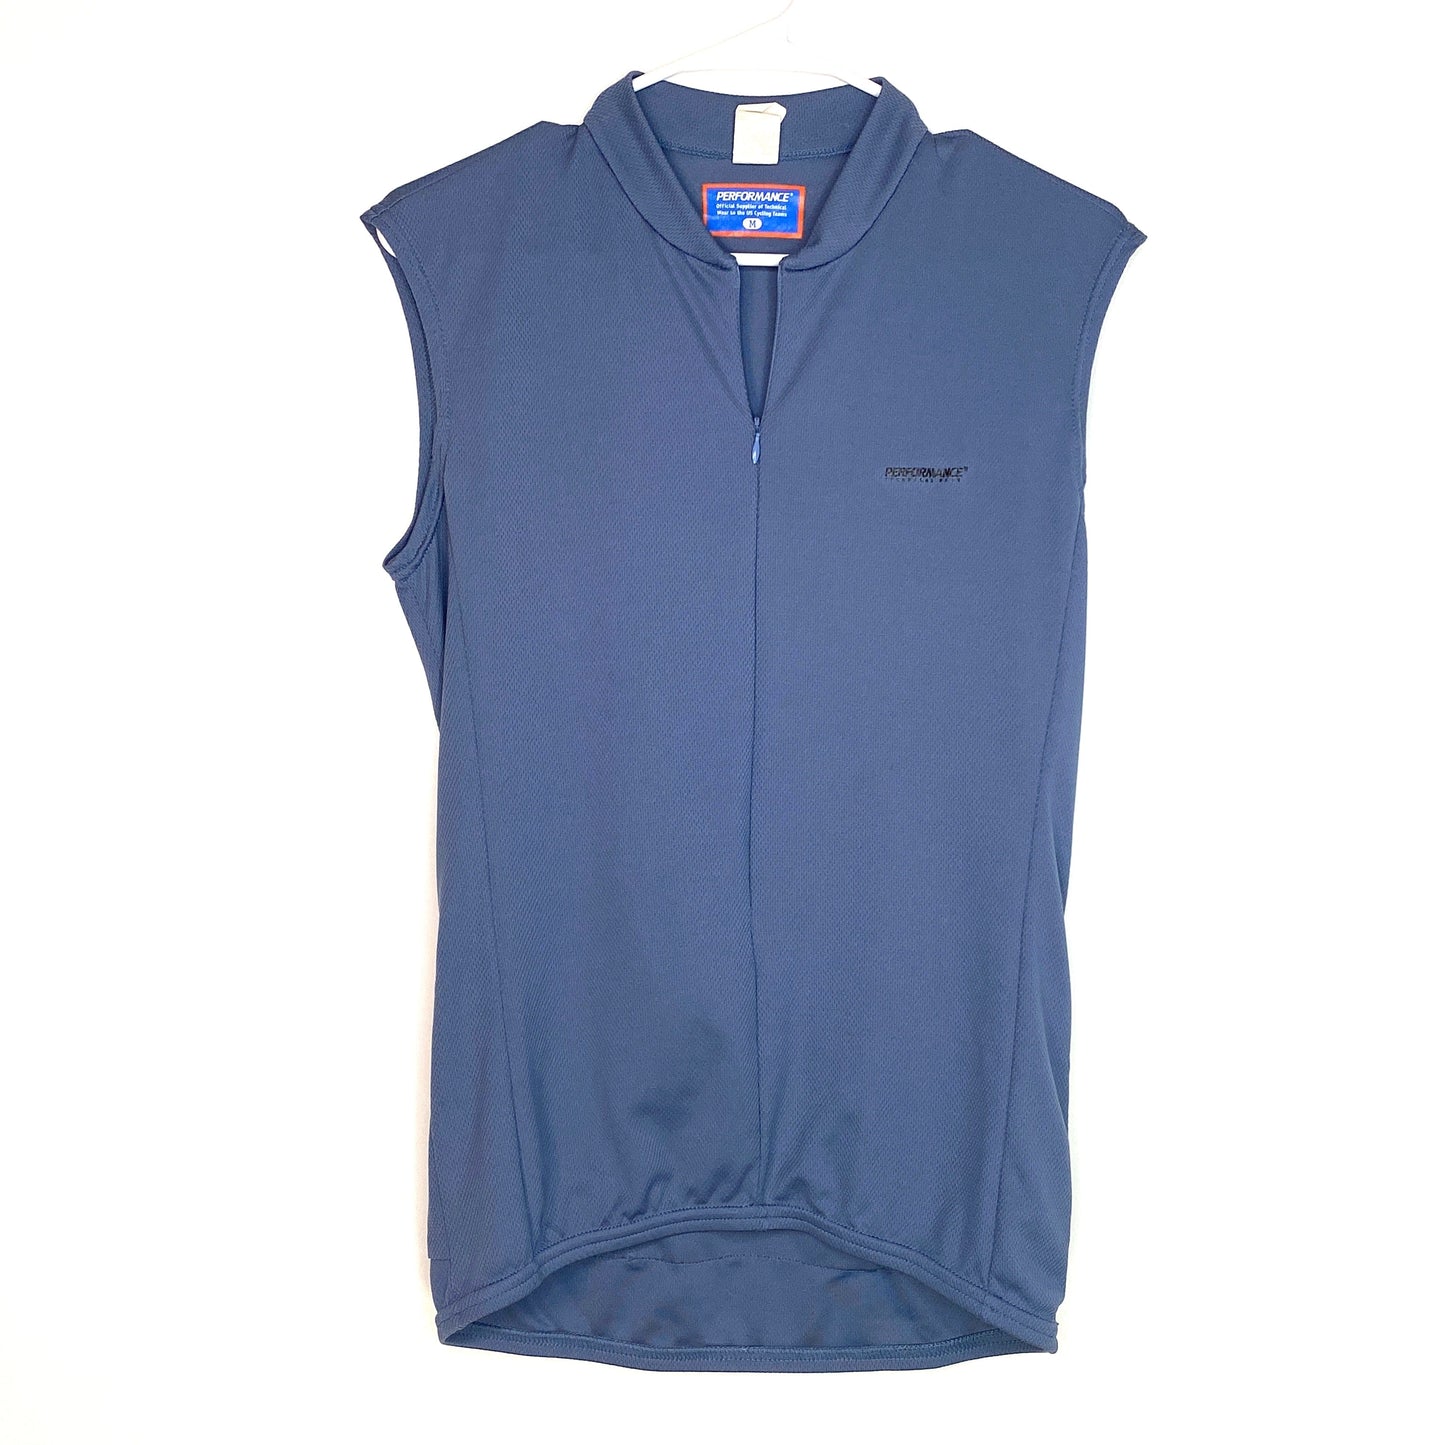 Stylish Performance Technical Wear Womens Blue Sleeveless Cycling Shirt M